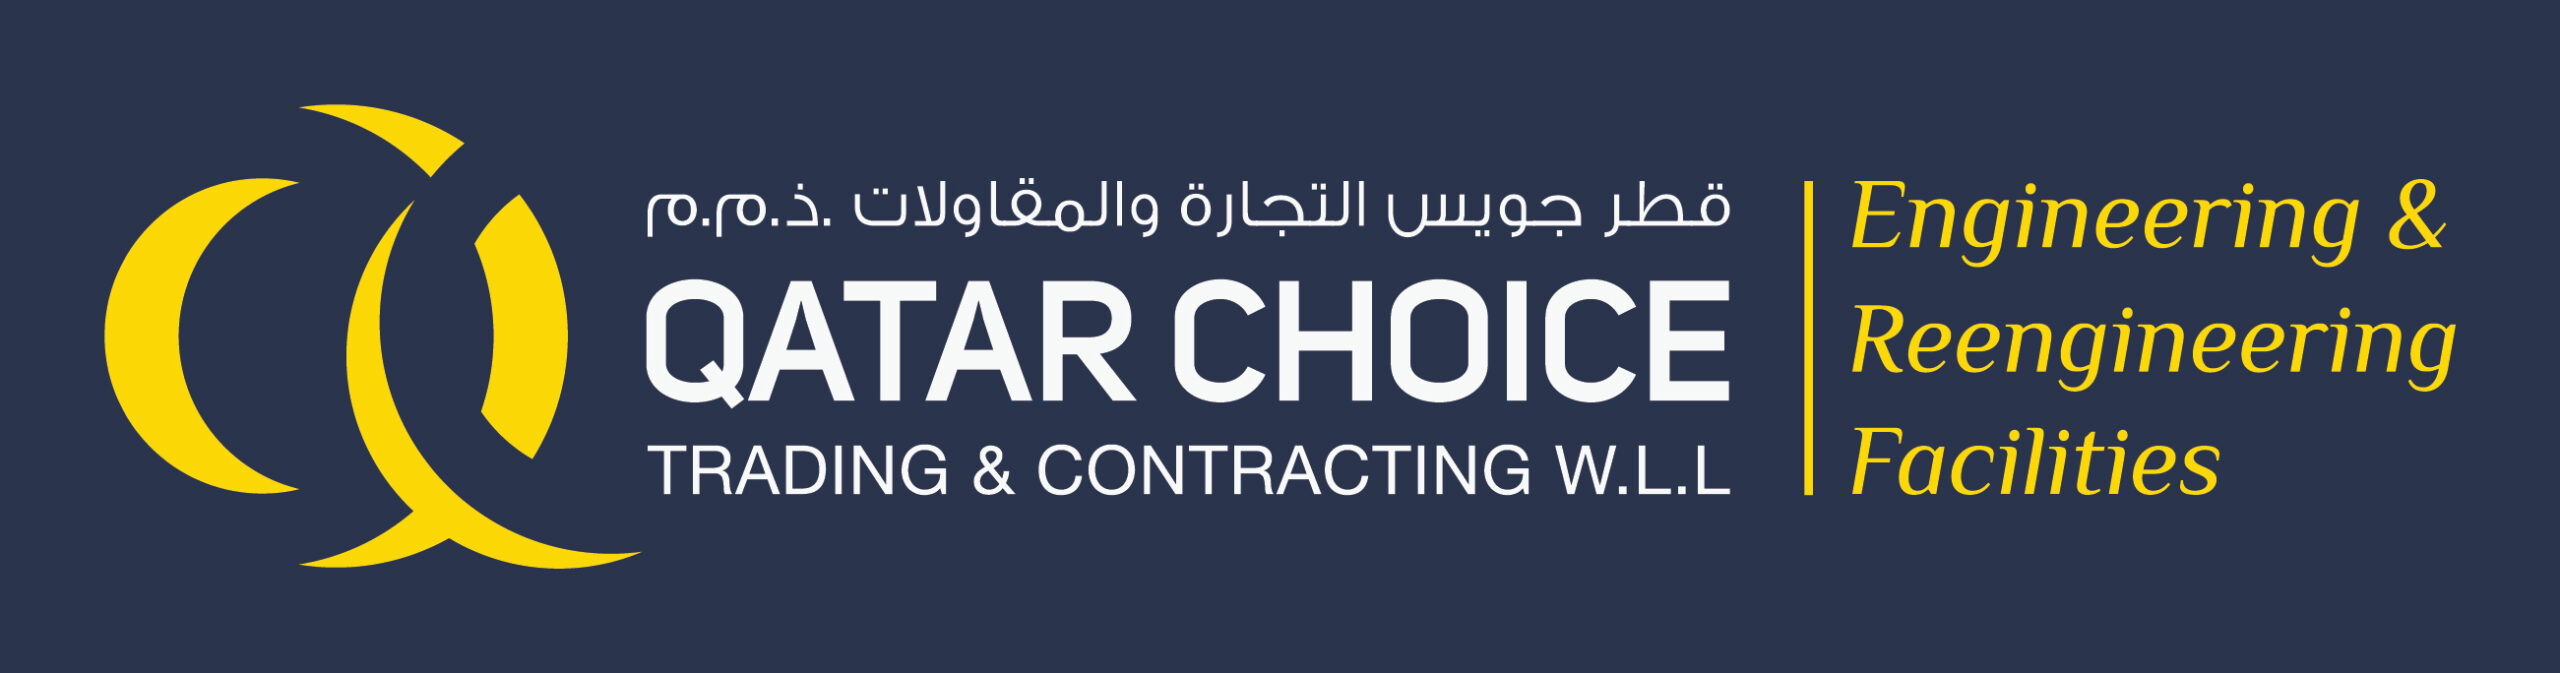 Qatar Choice